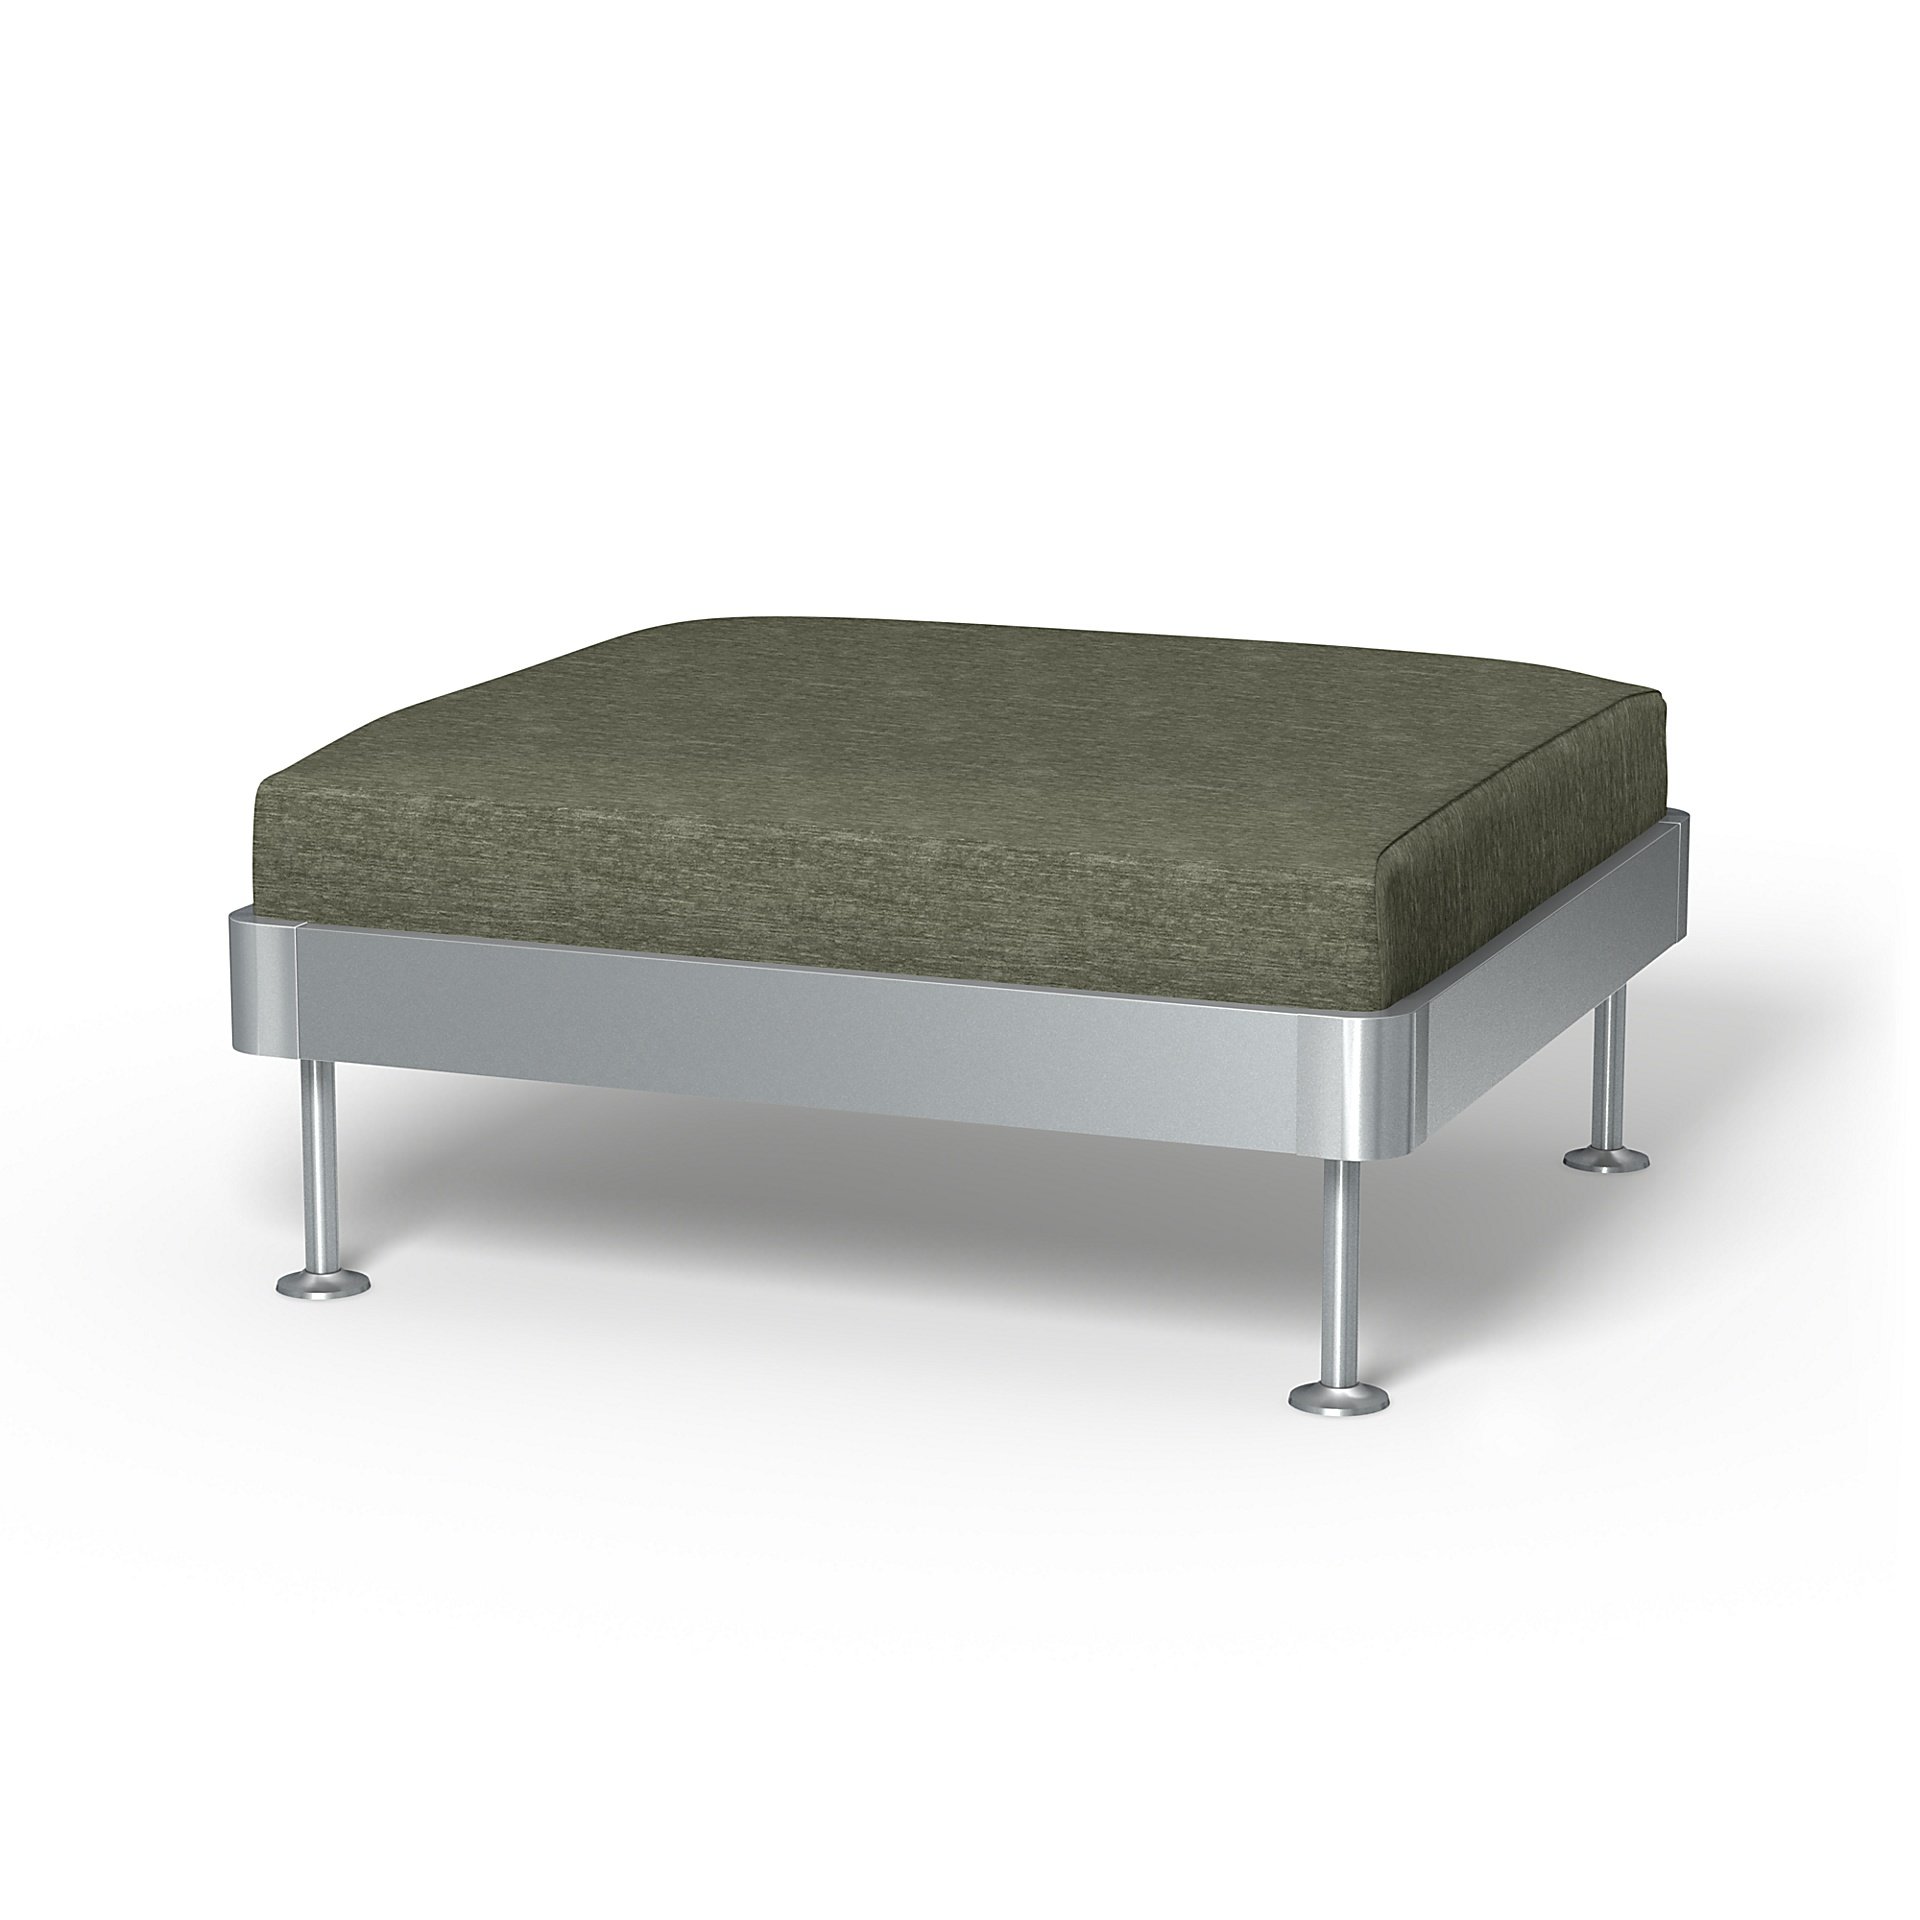 IKEA - Delaktig 1 Seat Platform Cover, Green Grey, Velvet - Bemz